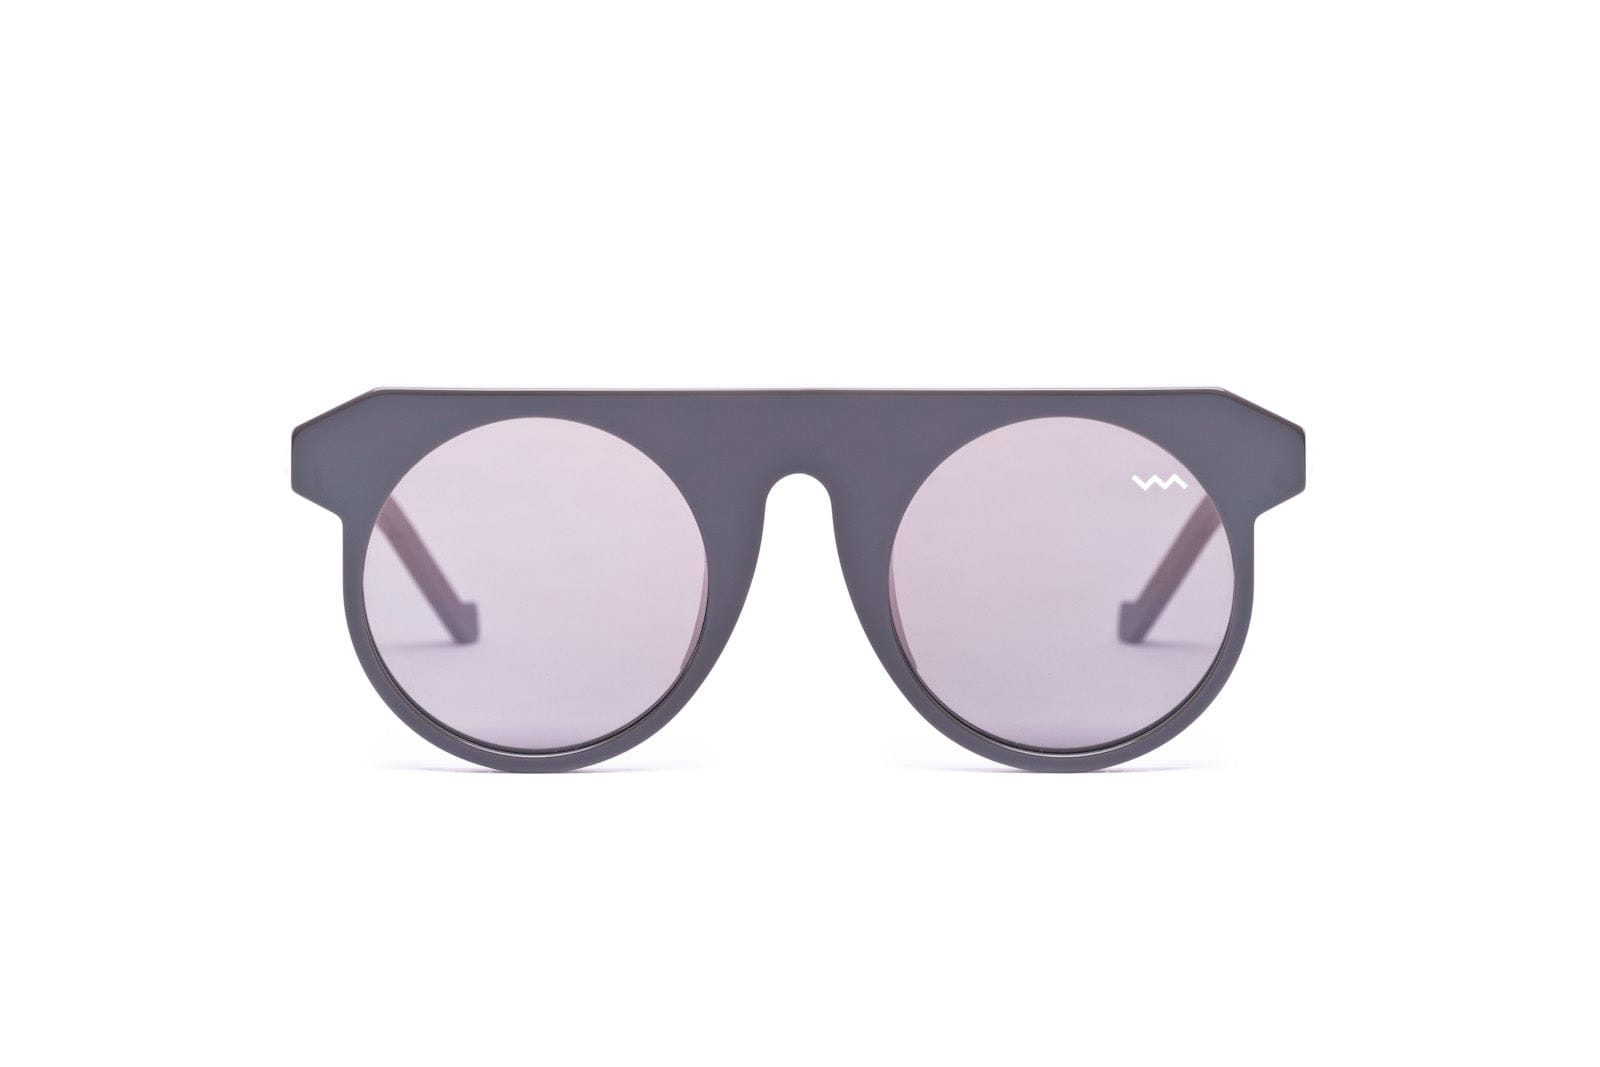 VAVA Bl0006-dark Grey Sunglasses